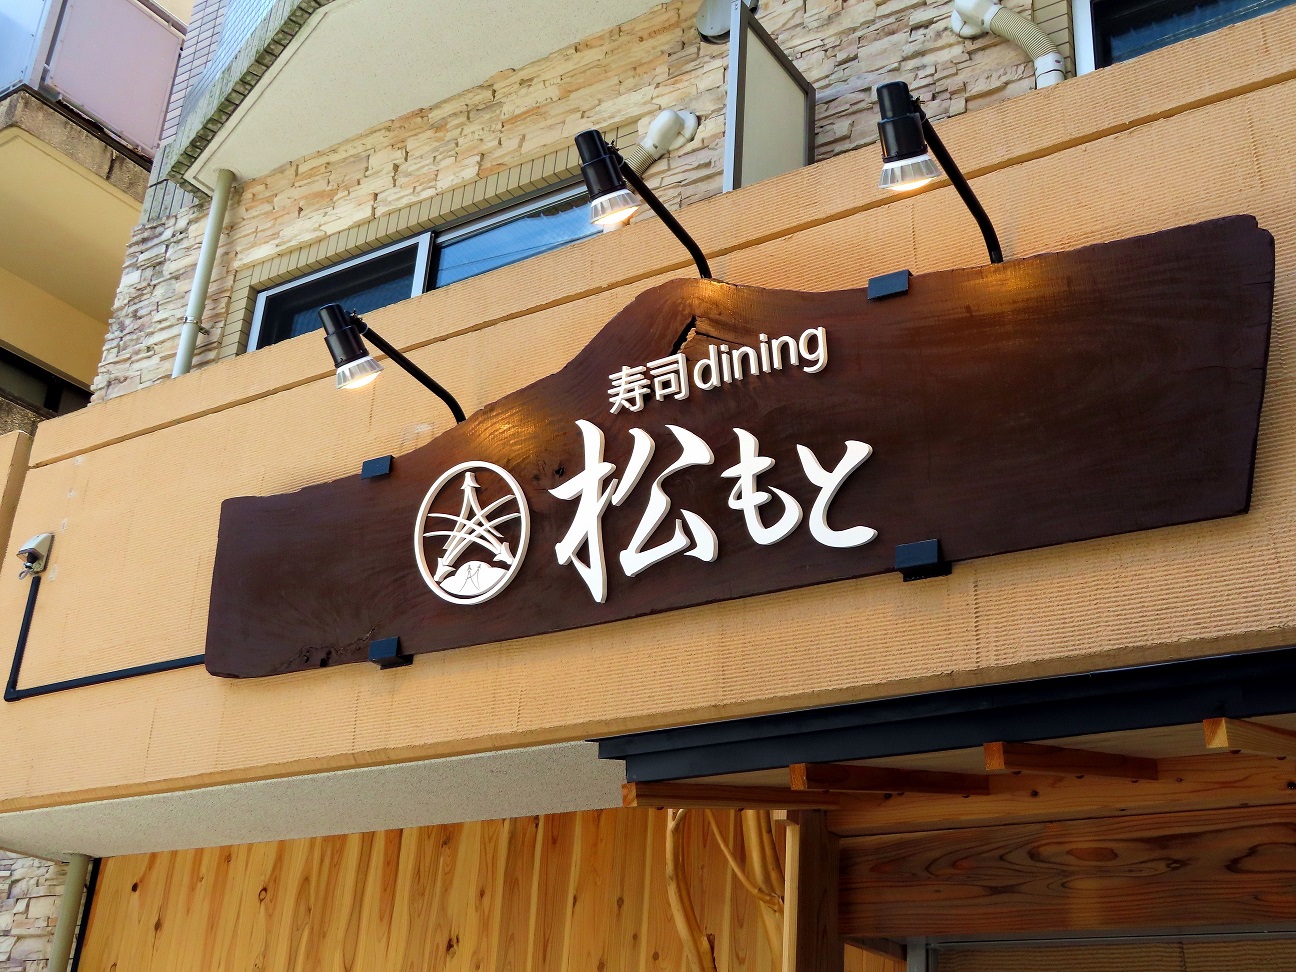 これから開店予定の【寿司dining松本】様の銘木看板・電飾看板製作設置storyです。